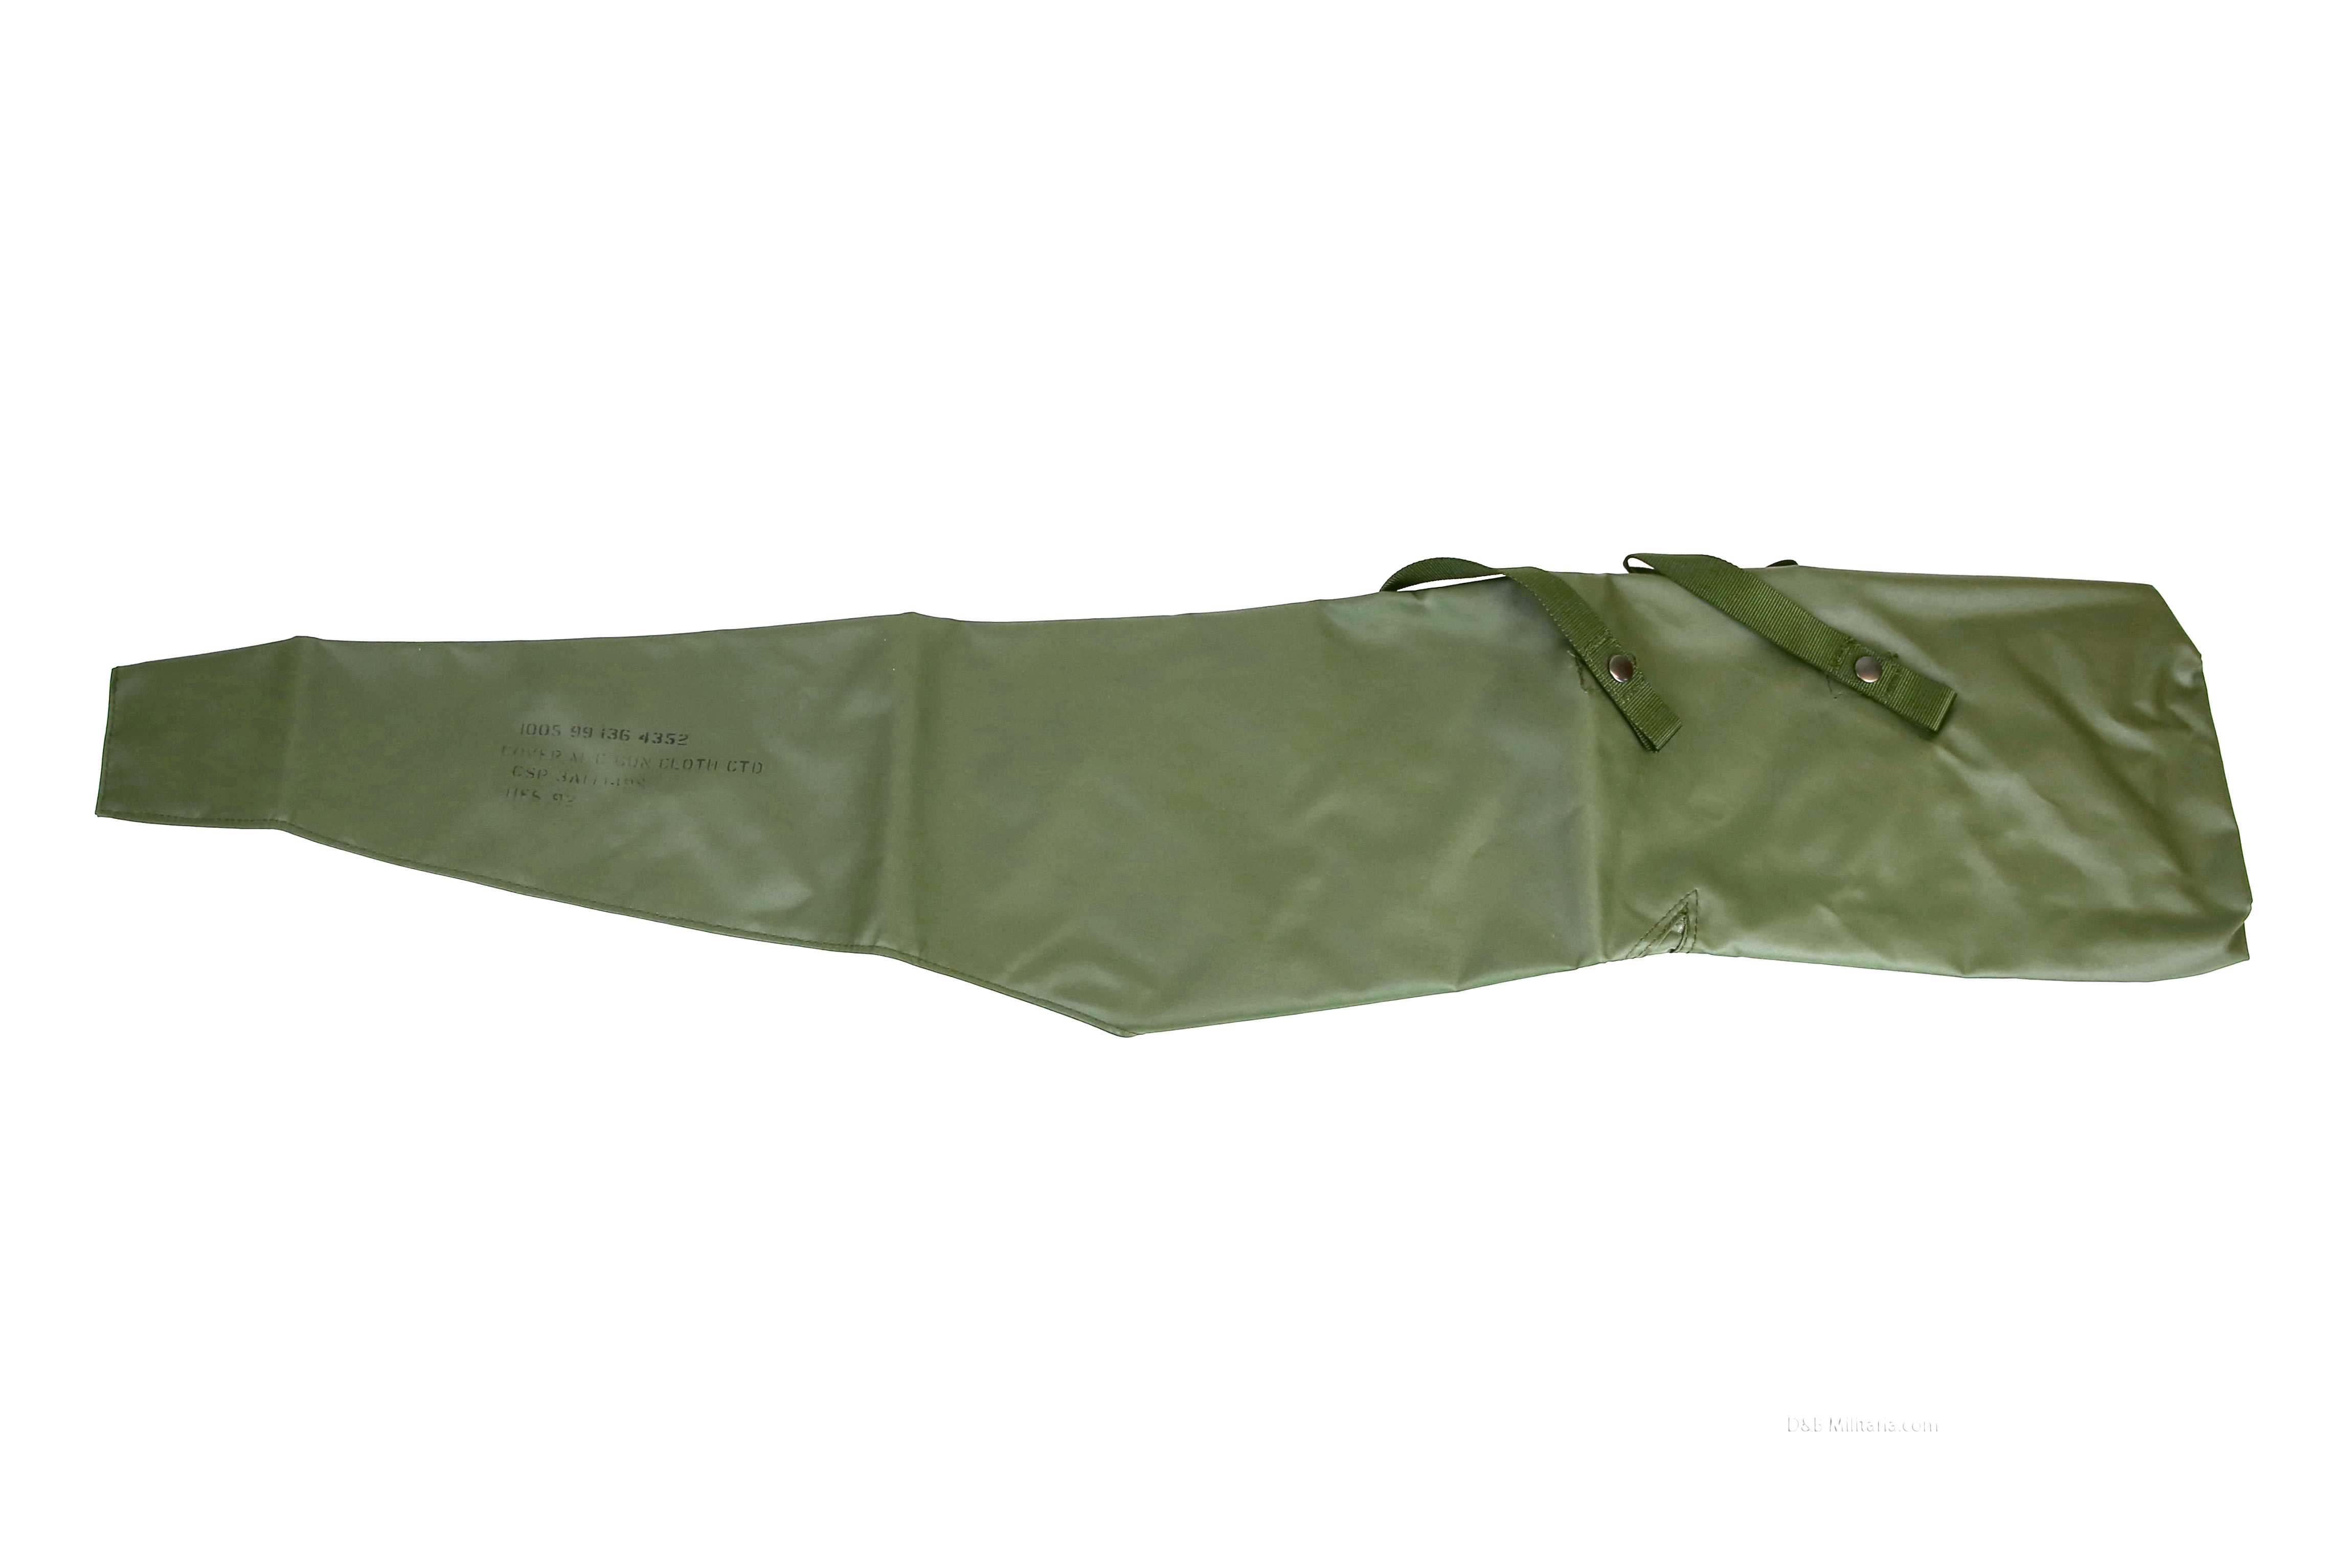 British Military LSW waterproof gun bag